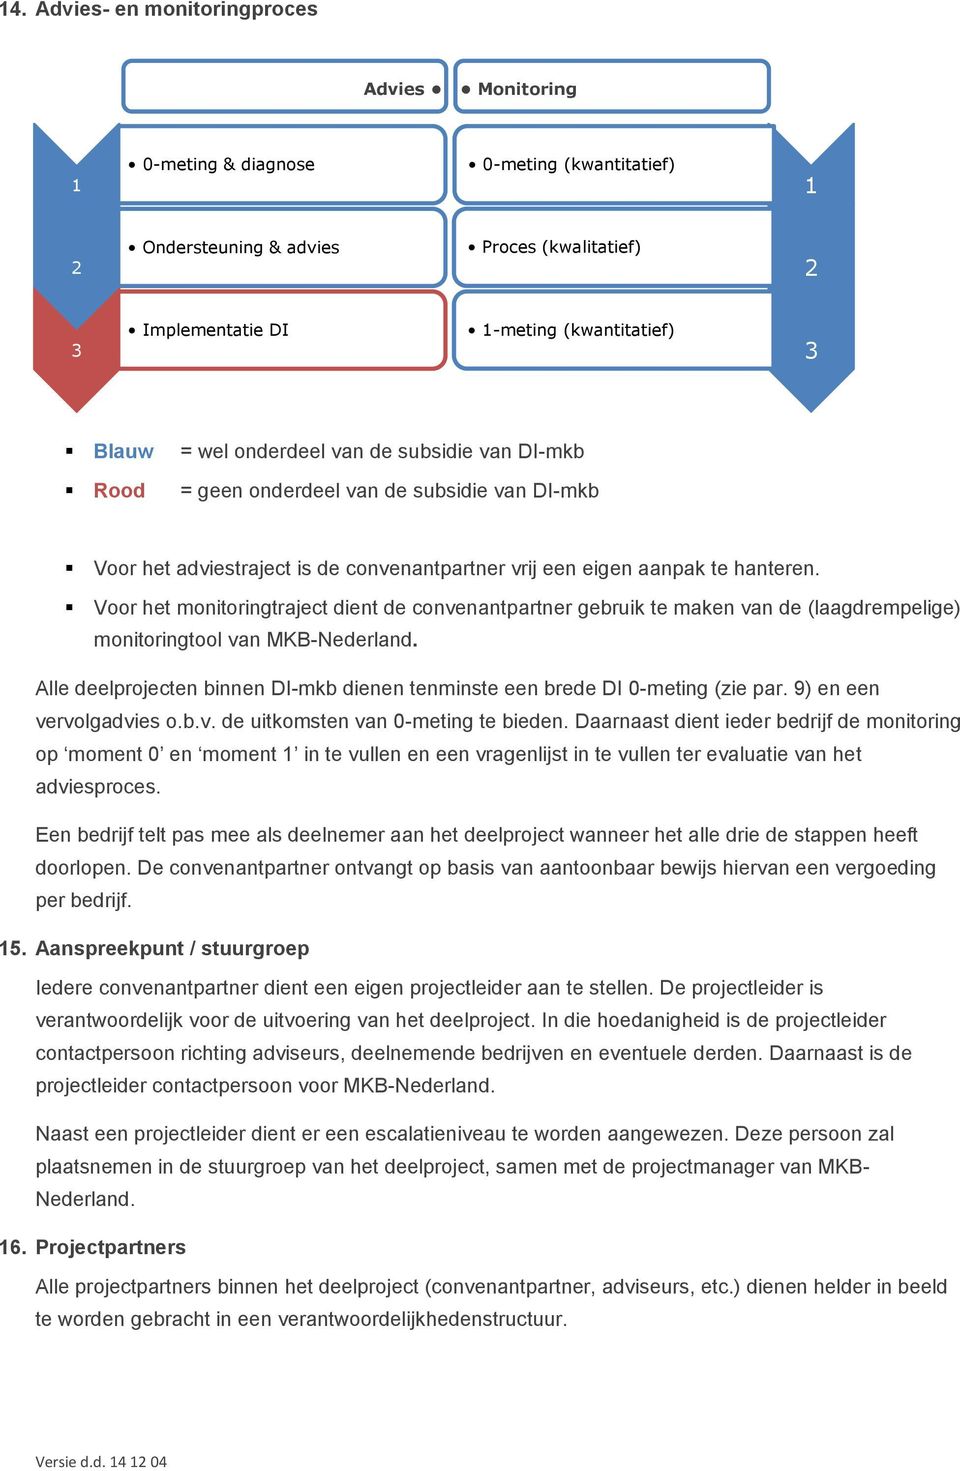 Voor het monitoringtraject dient de convenantpartner gebruik te maken van de (laagdrempelige) monitoringtool van MKB-Nederland.